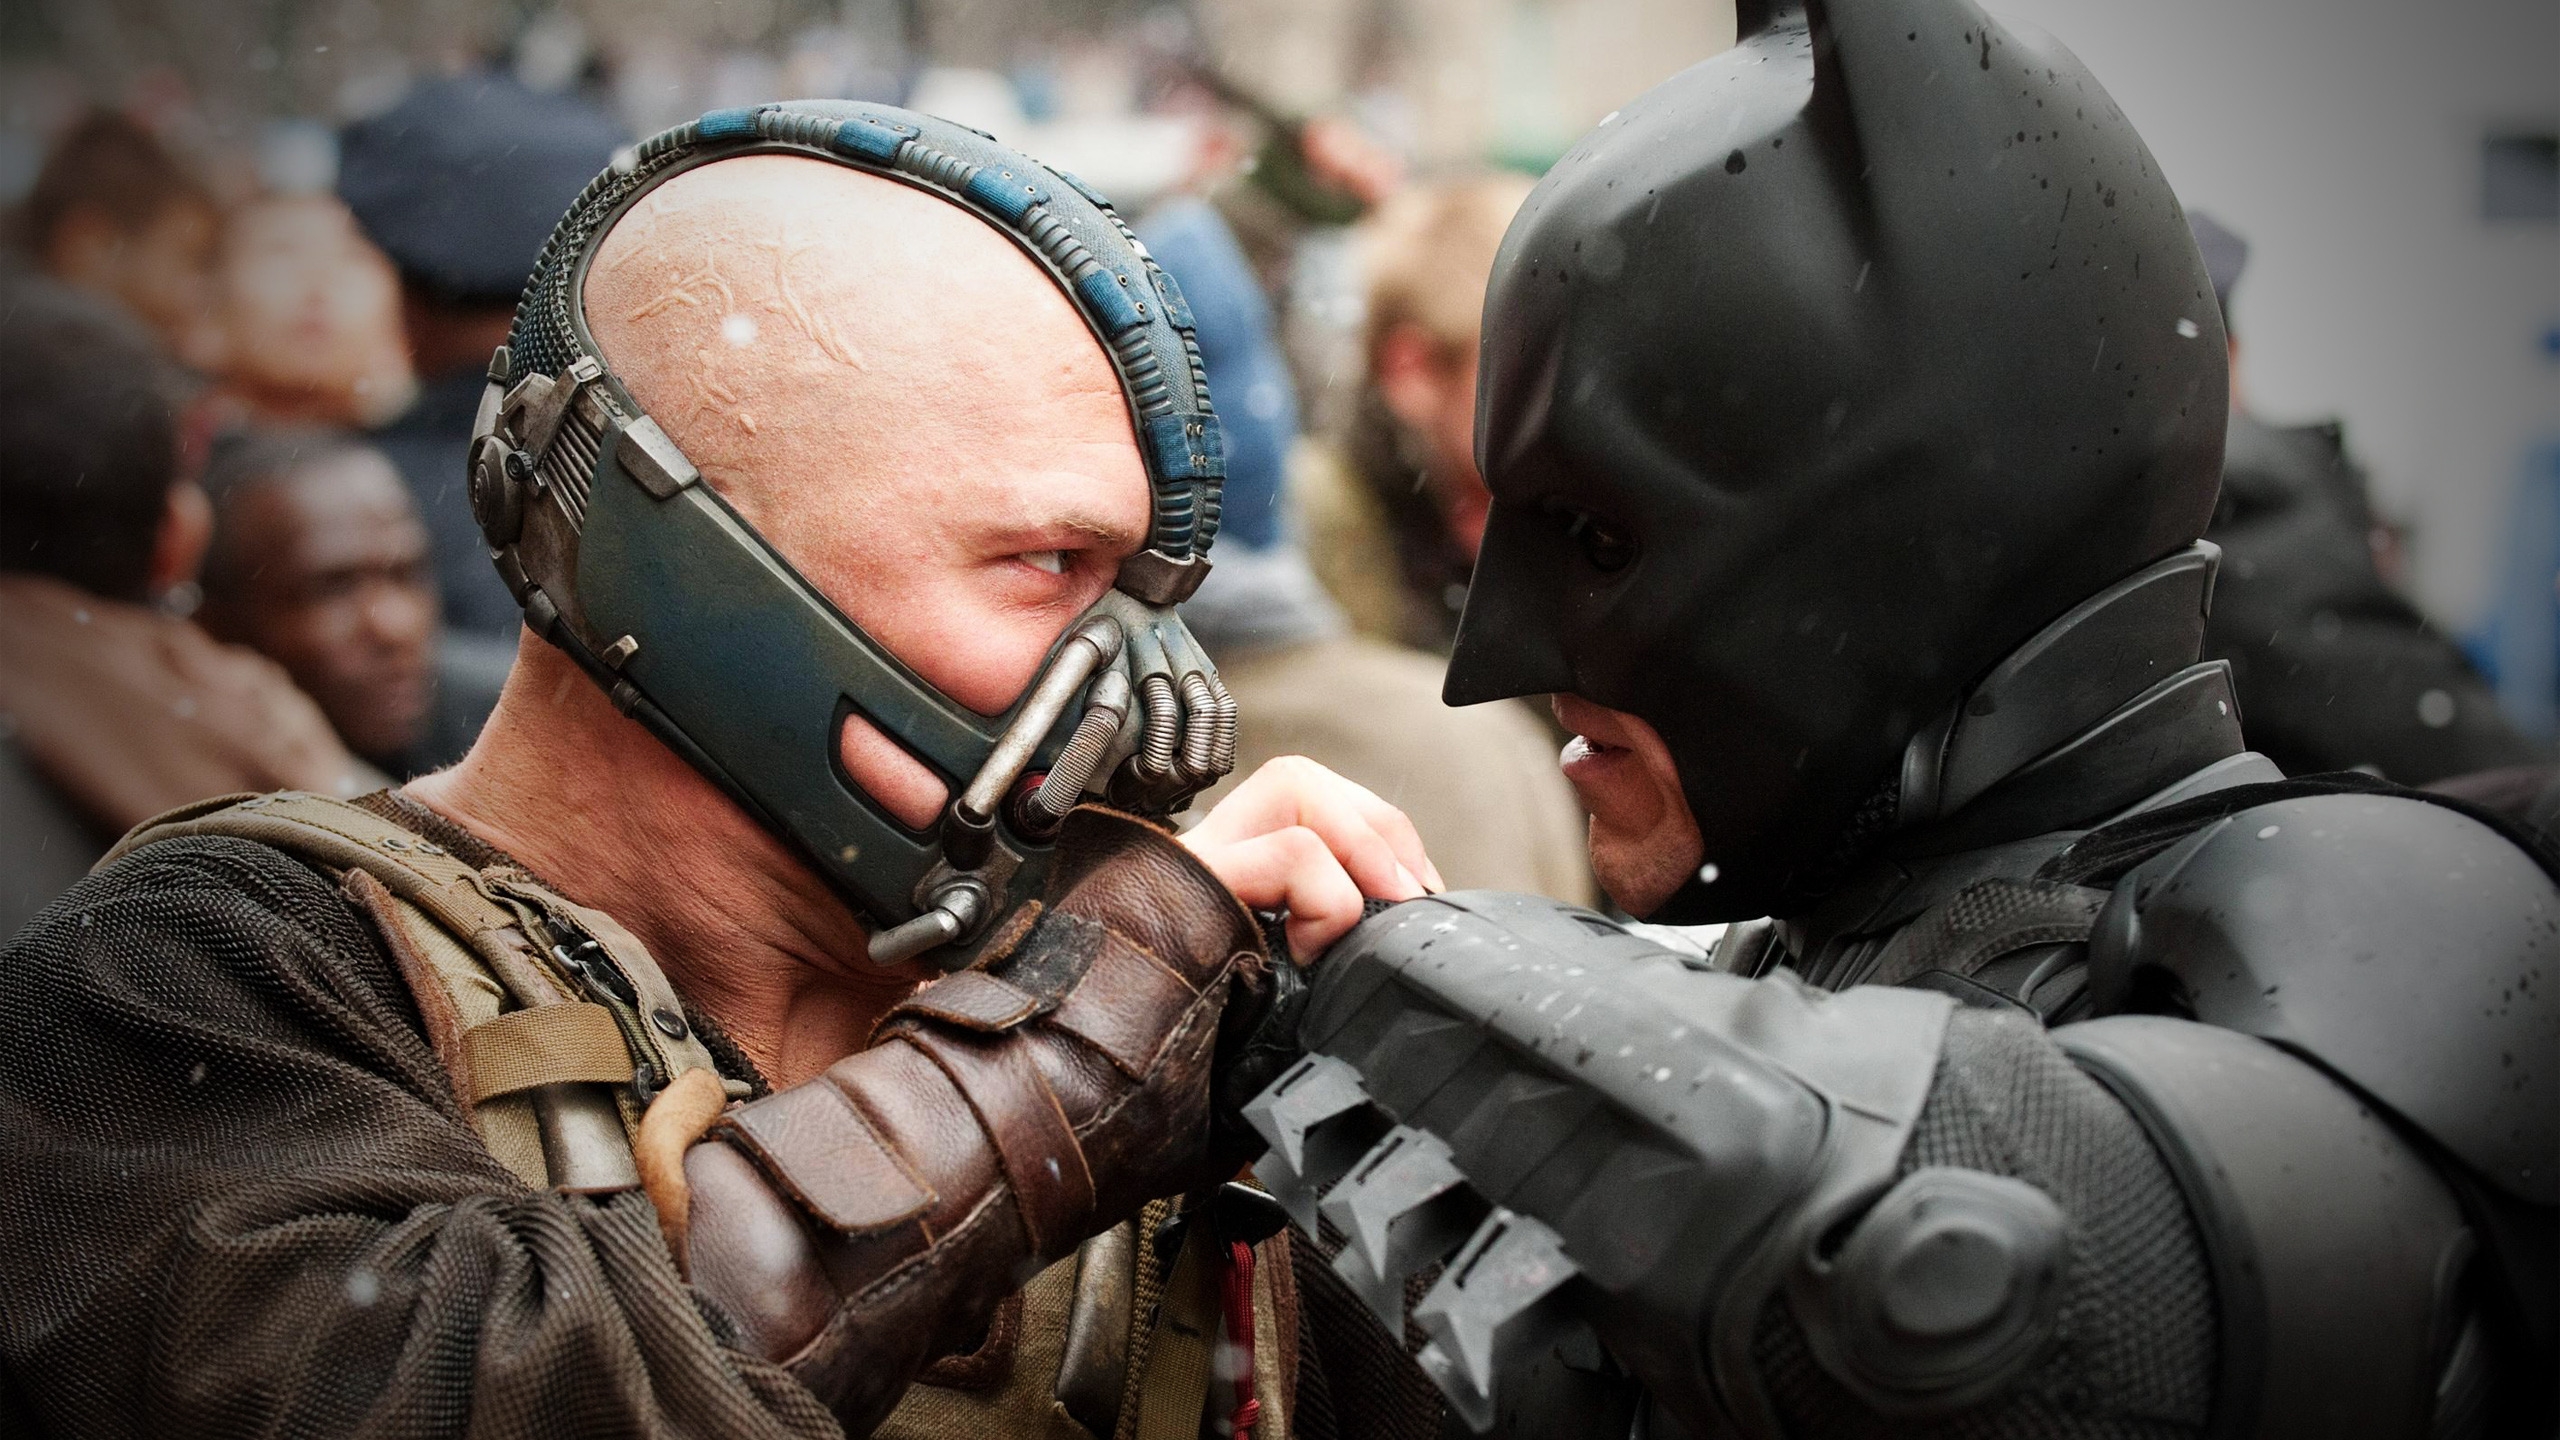 Bane vs Batman for 2560x1440 HDTV resolution